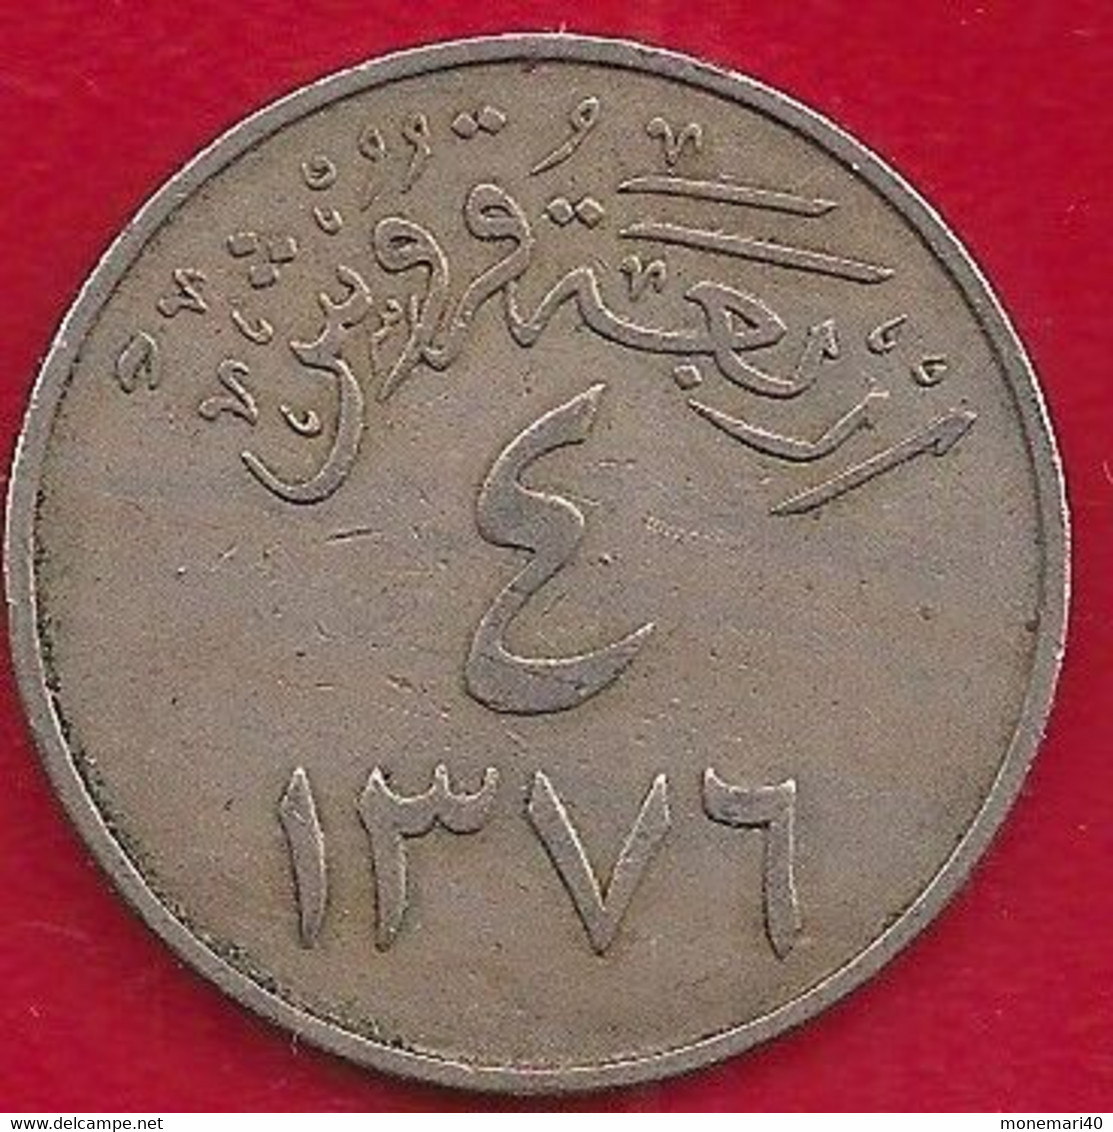 ARABIE SAOUDITE 4 GHIRSH - 1956 - Arabia Saudita